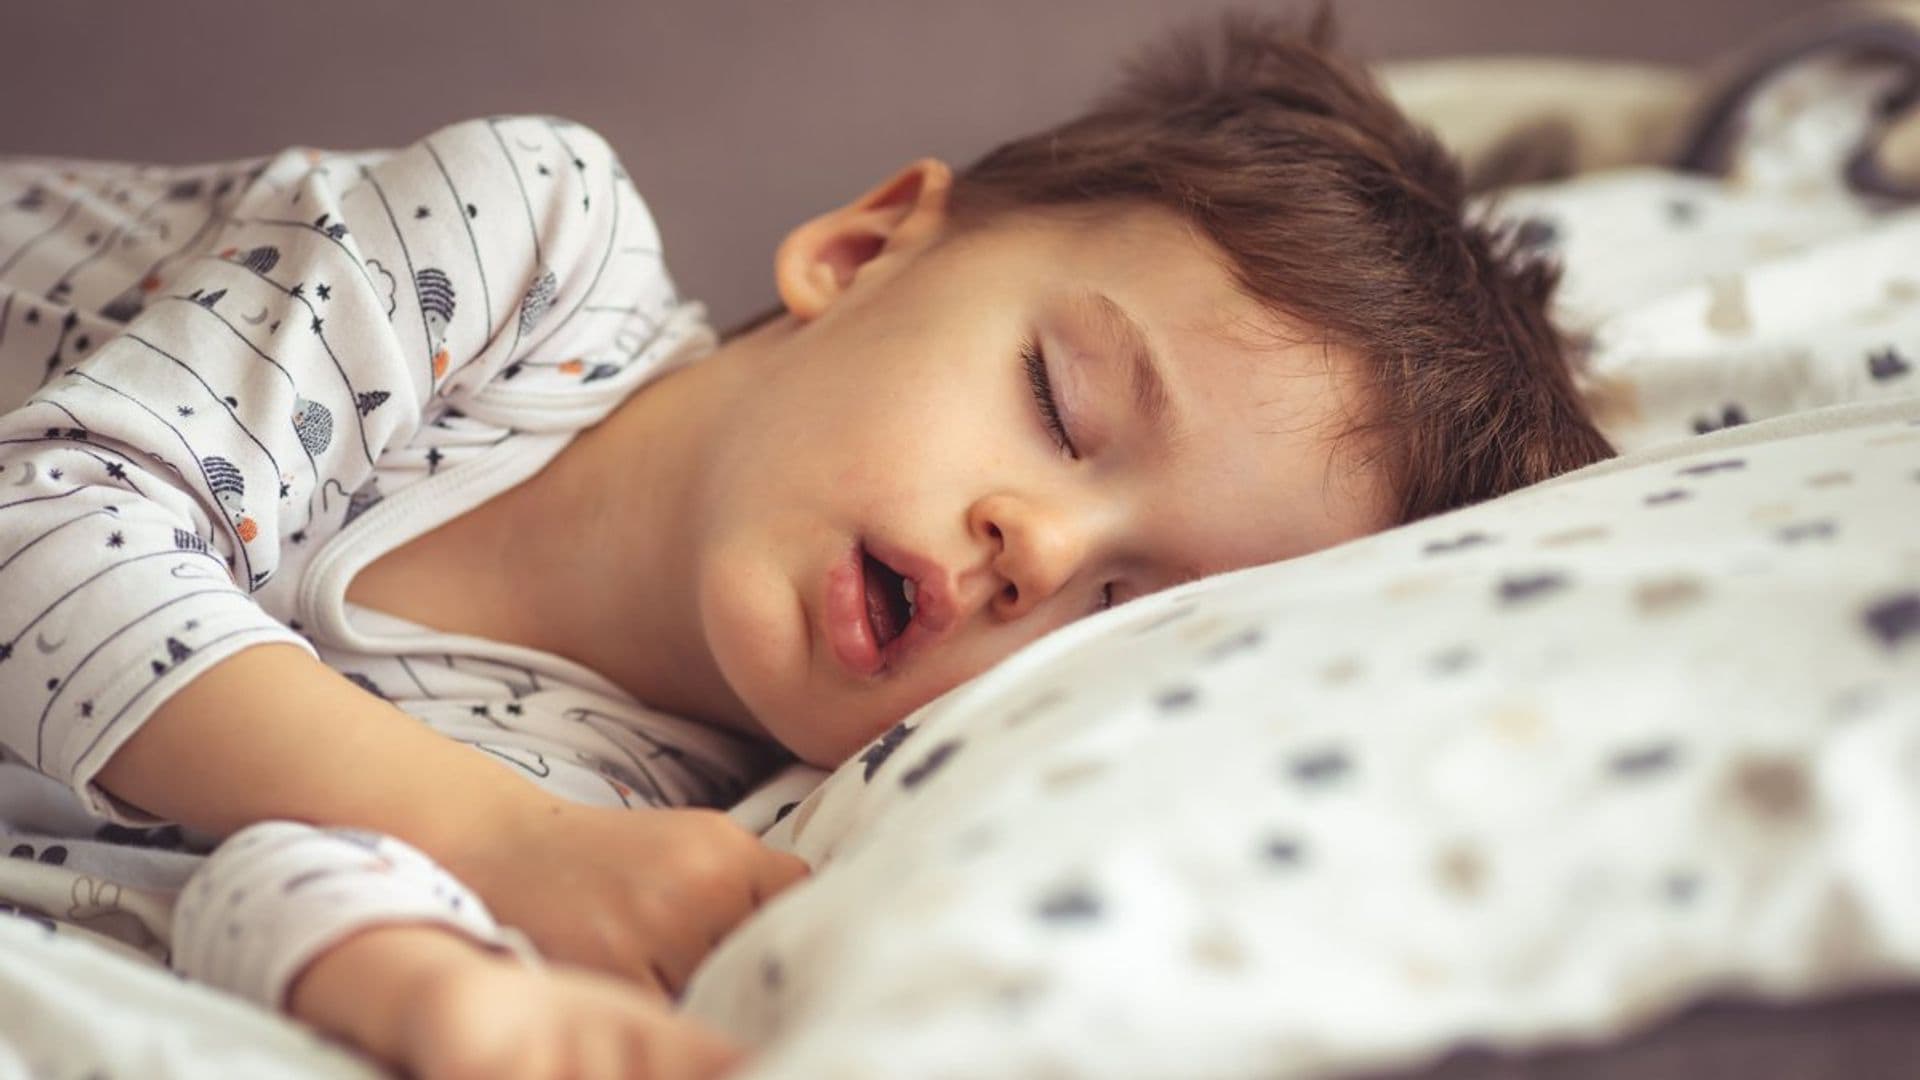 Si tu hijo ronca, puede estar sufriendo apnea del sueño infantil